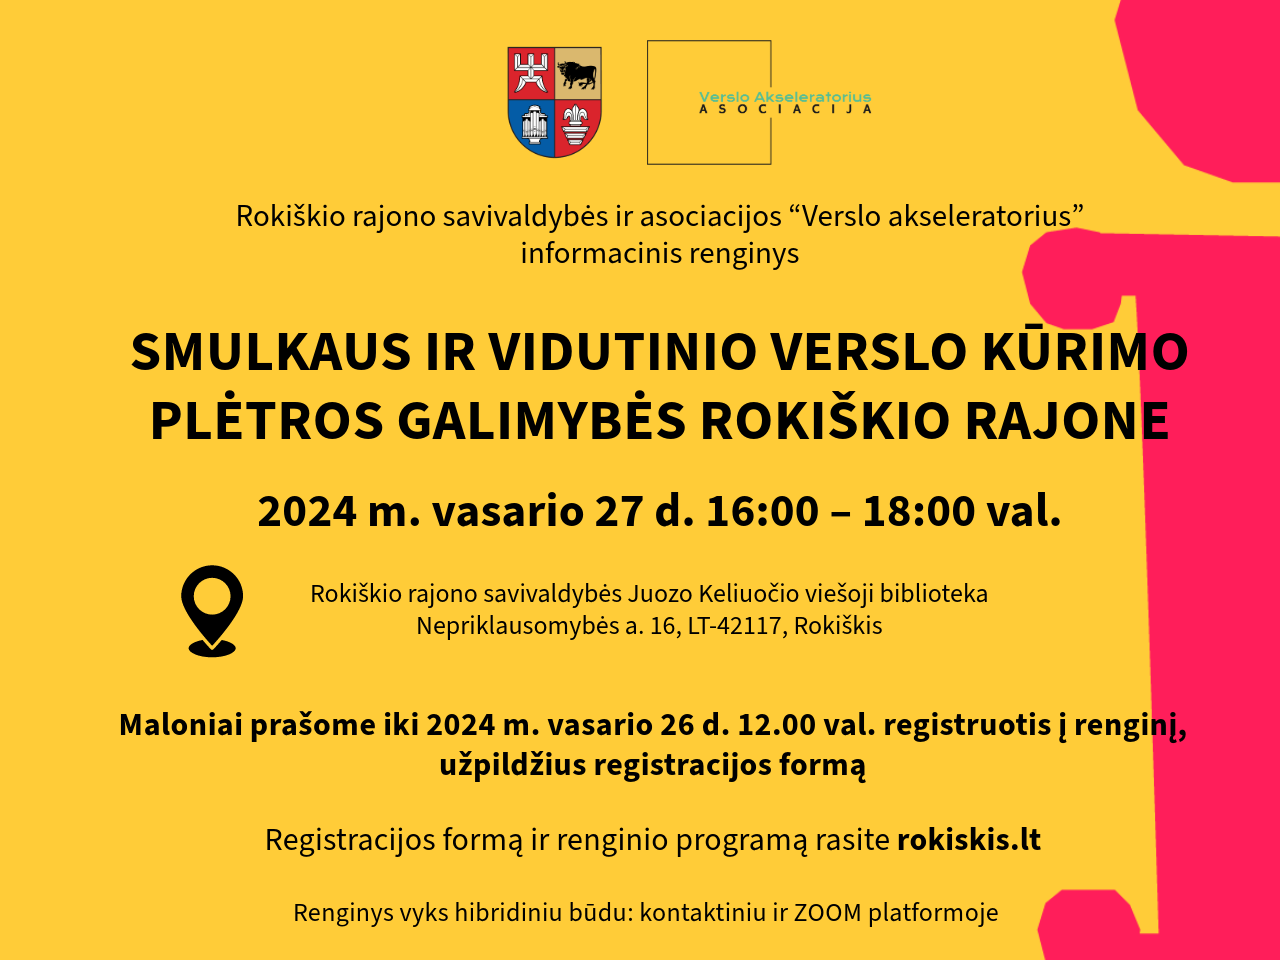 Rokiškio rajono savivaldybės ir asociacijos “Verslo akseleratorius” informacinis renginys